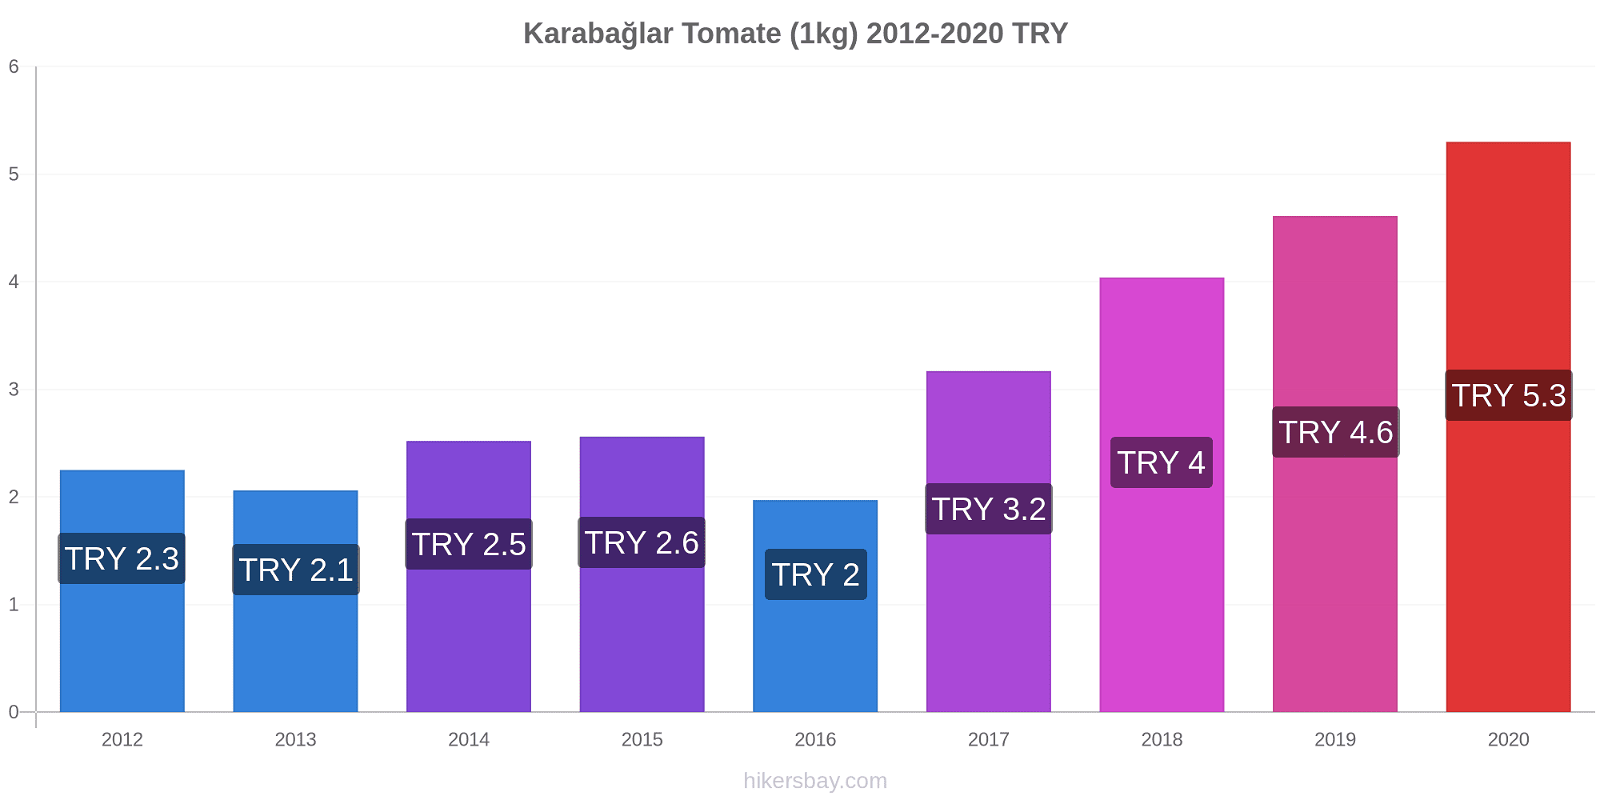 Karabağlar variação de preço Tomate (1kg) hikersbay.com